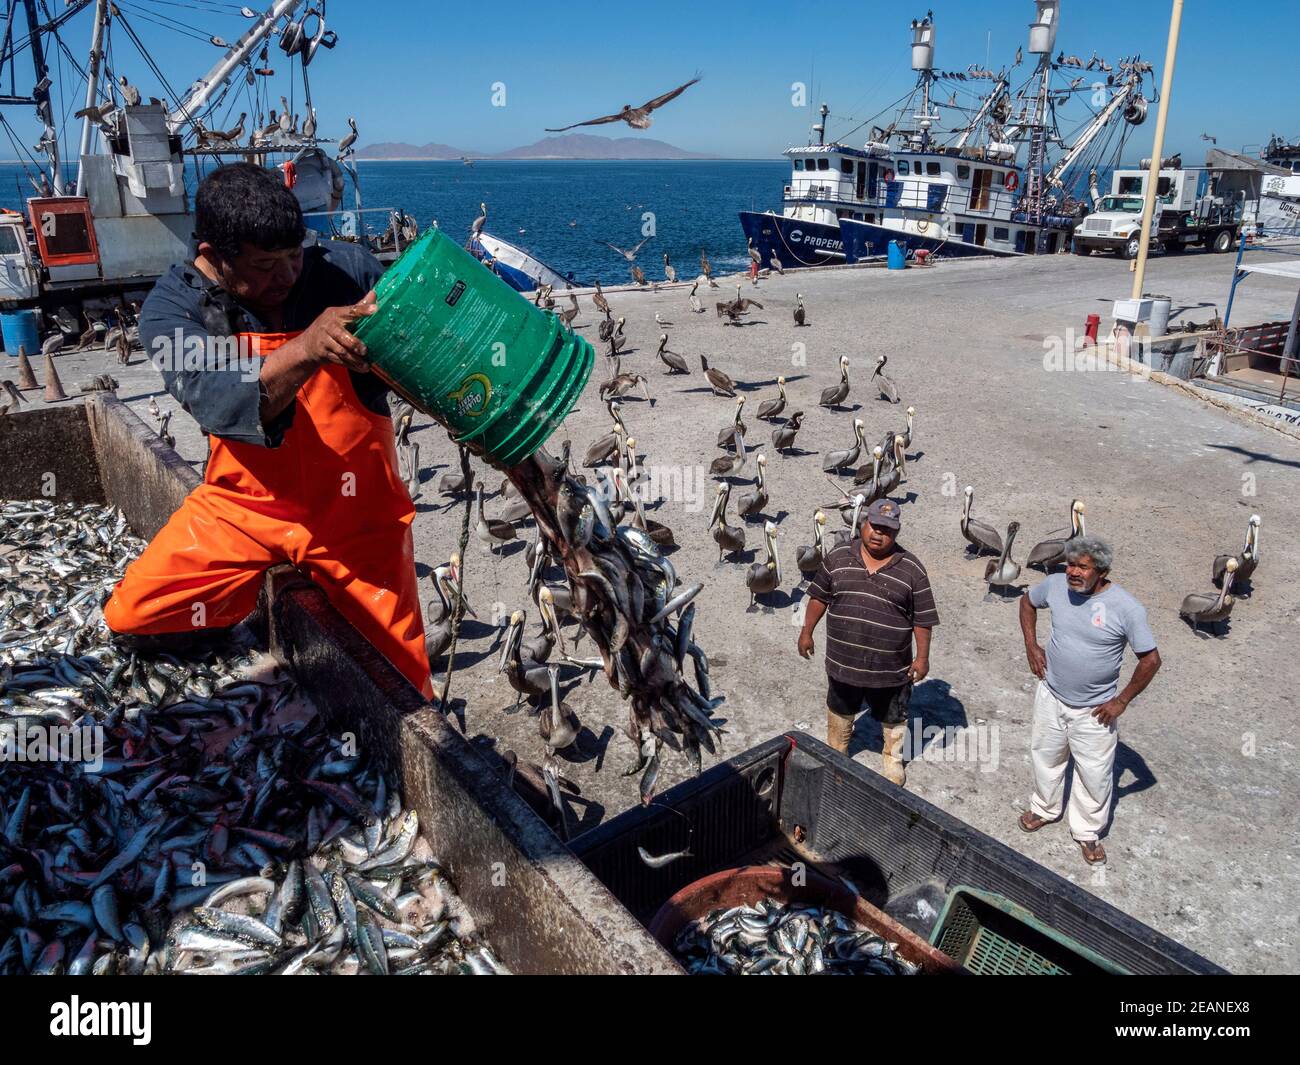 Jours de capture de sardines triées dans une usine de transformation du poisson à Puerto San Carlos, Baja California sur, Mexique, Amérique du Nord Banque D'Images